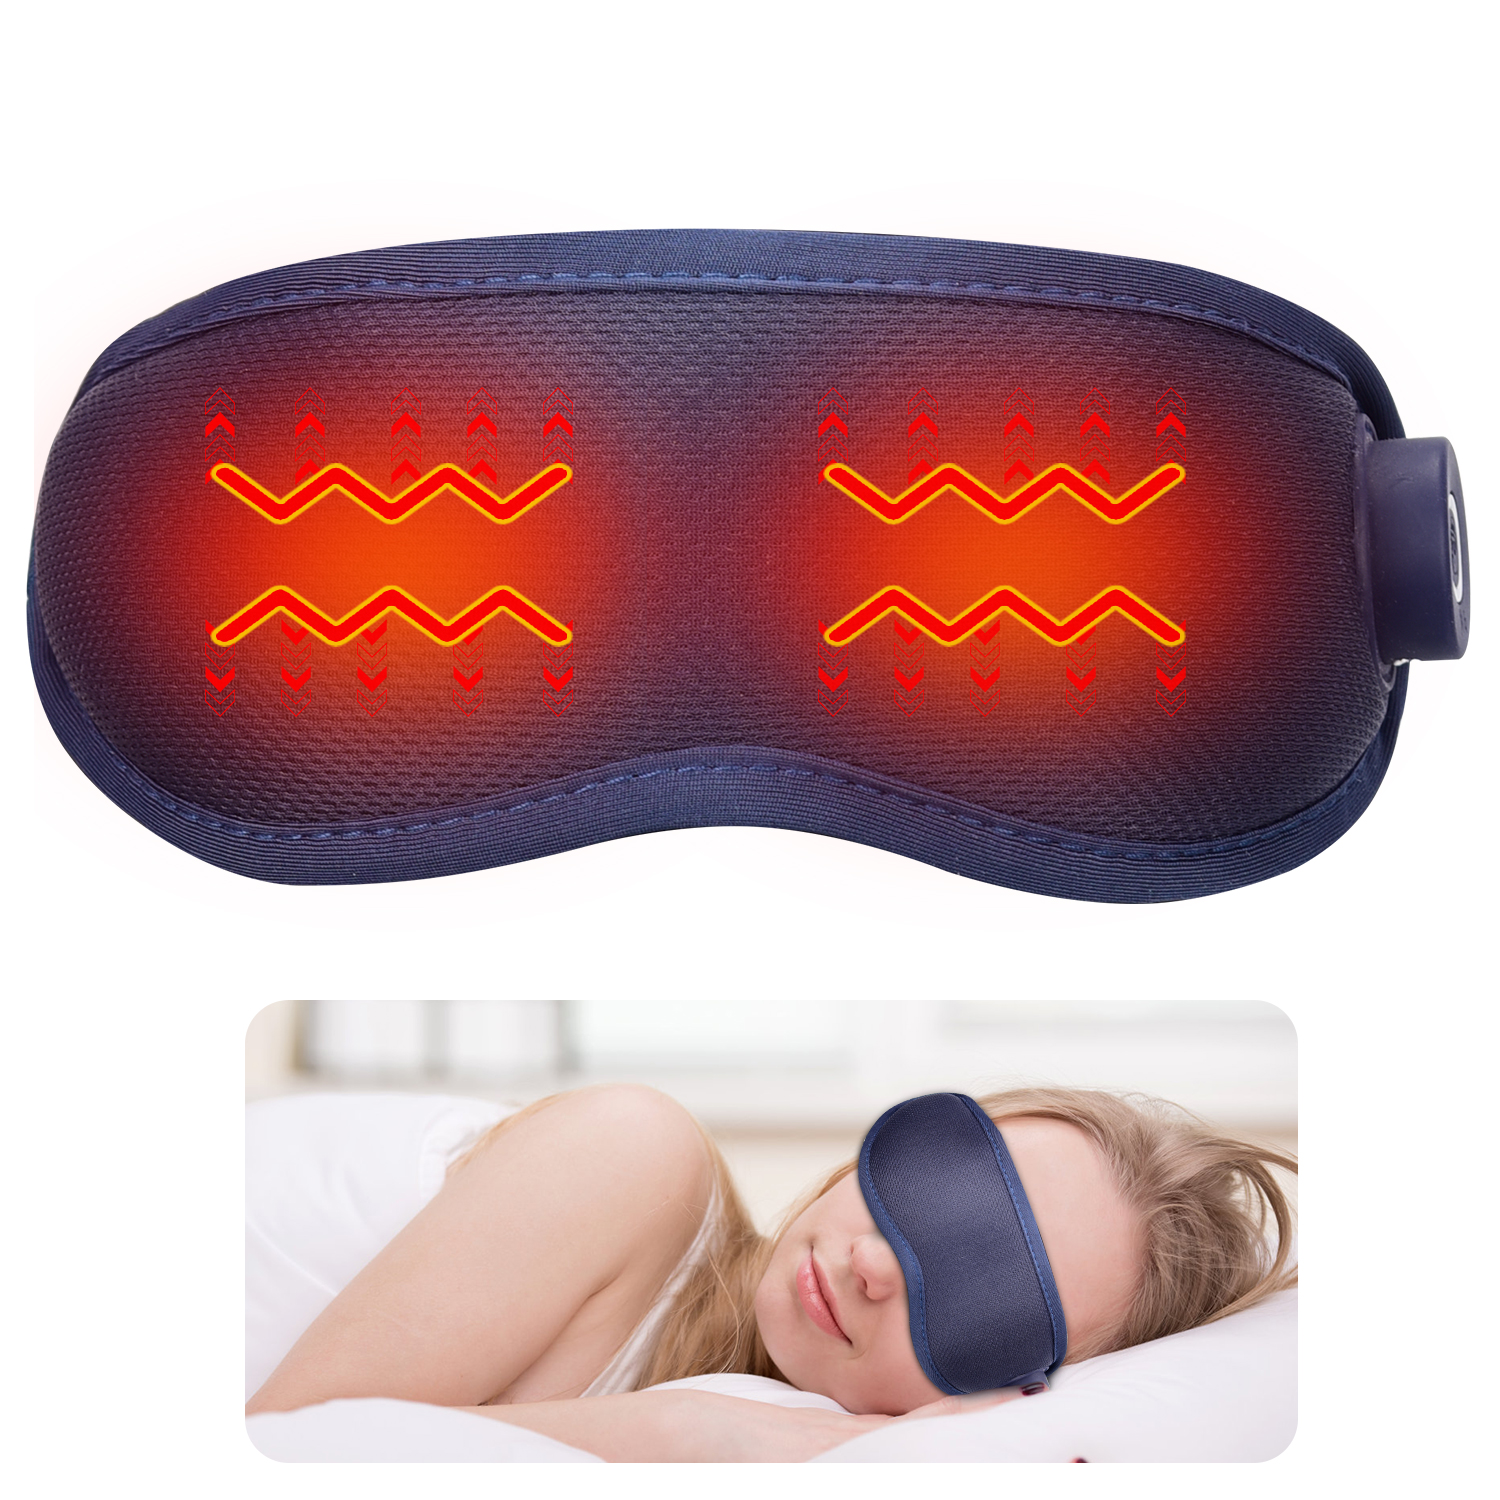 Meeegou Mascarilla masajeadora eléctrica inteligente para el cuidado de los ojos con ojeras, calefacción, vibración